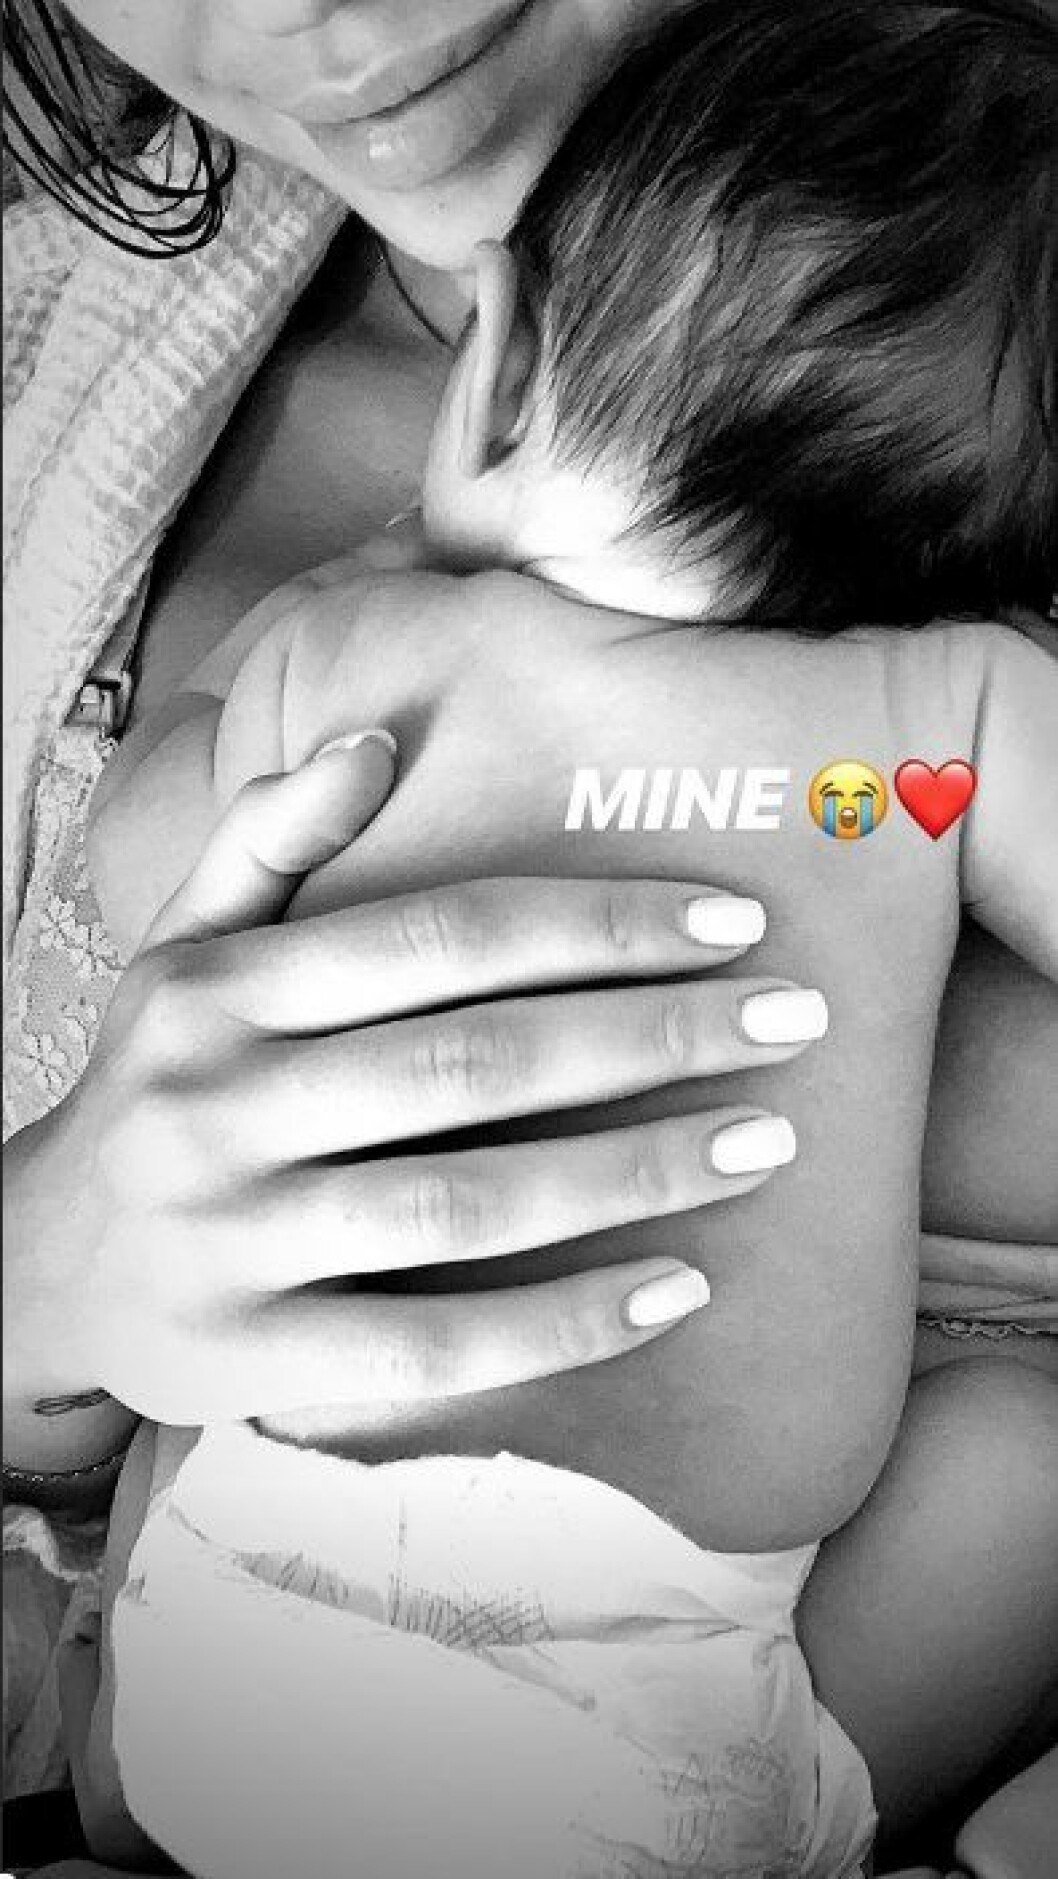 En bild på Instagram som Kenza publicerat av sin nyfödde son. 